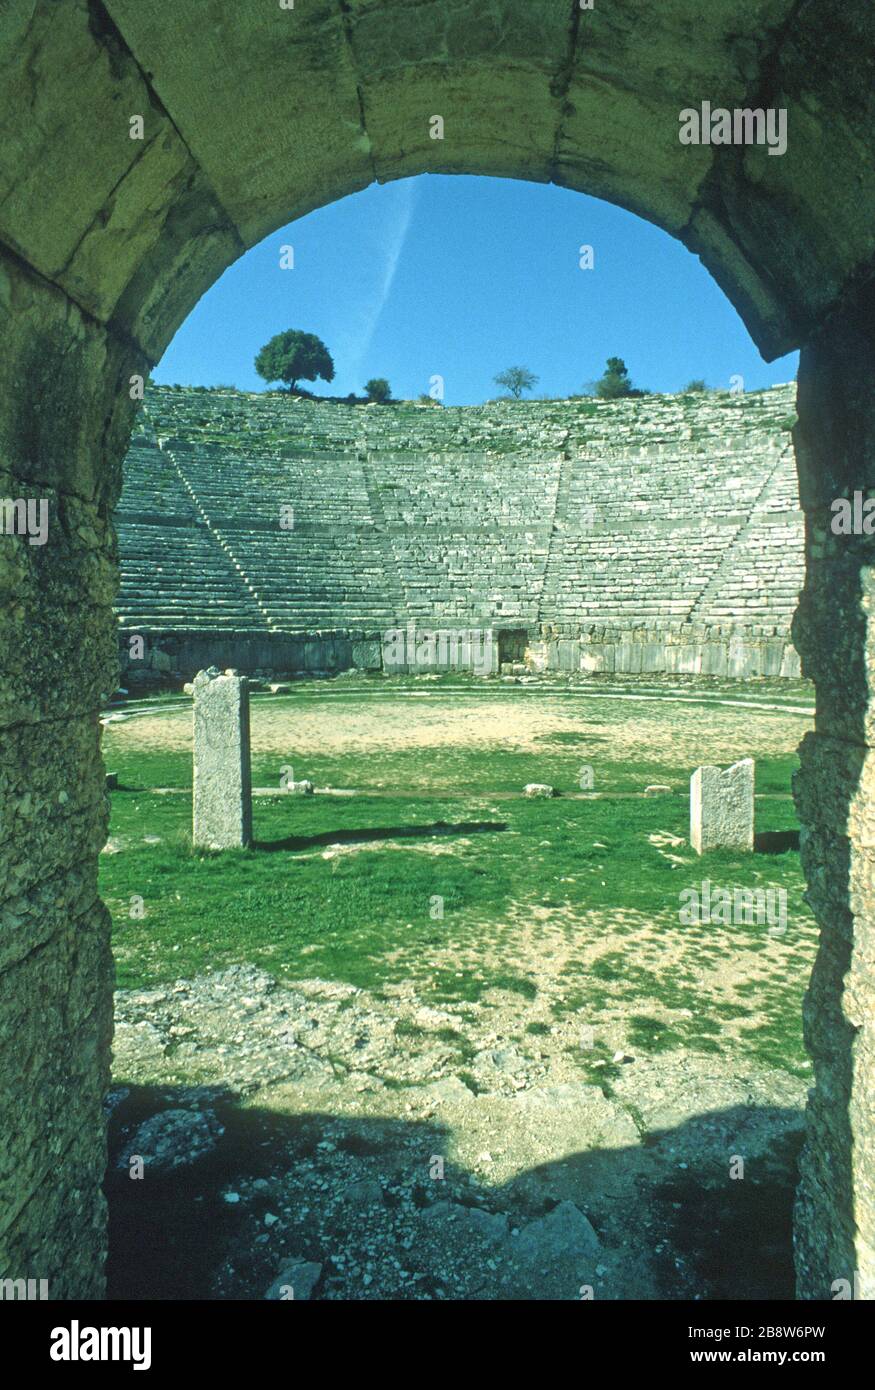 L'antico teatro greco di Dodoni, Ioannina, Epiro, Grecia, visto dall'ingresso degli artisti, mostra file curve di sedili in pietra che guardano verso il basso sul palcoscenico e scalano fino ad ogni livello. Cielo blu sullo sfondo. Dodoni è uno dei 15 teatri dell'antica Grecia, con lo status di patrimonio dell'umanità dell'UNESCO. Foto Stock